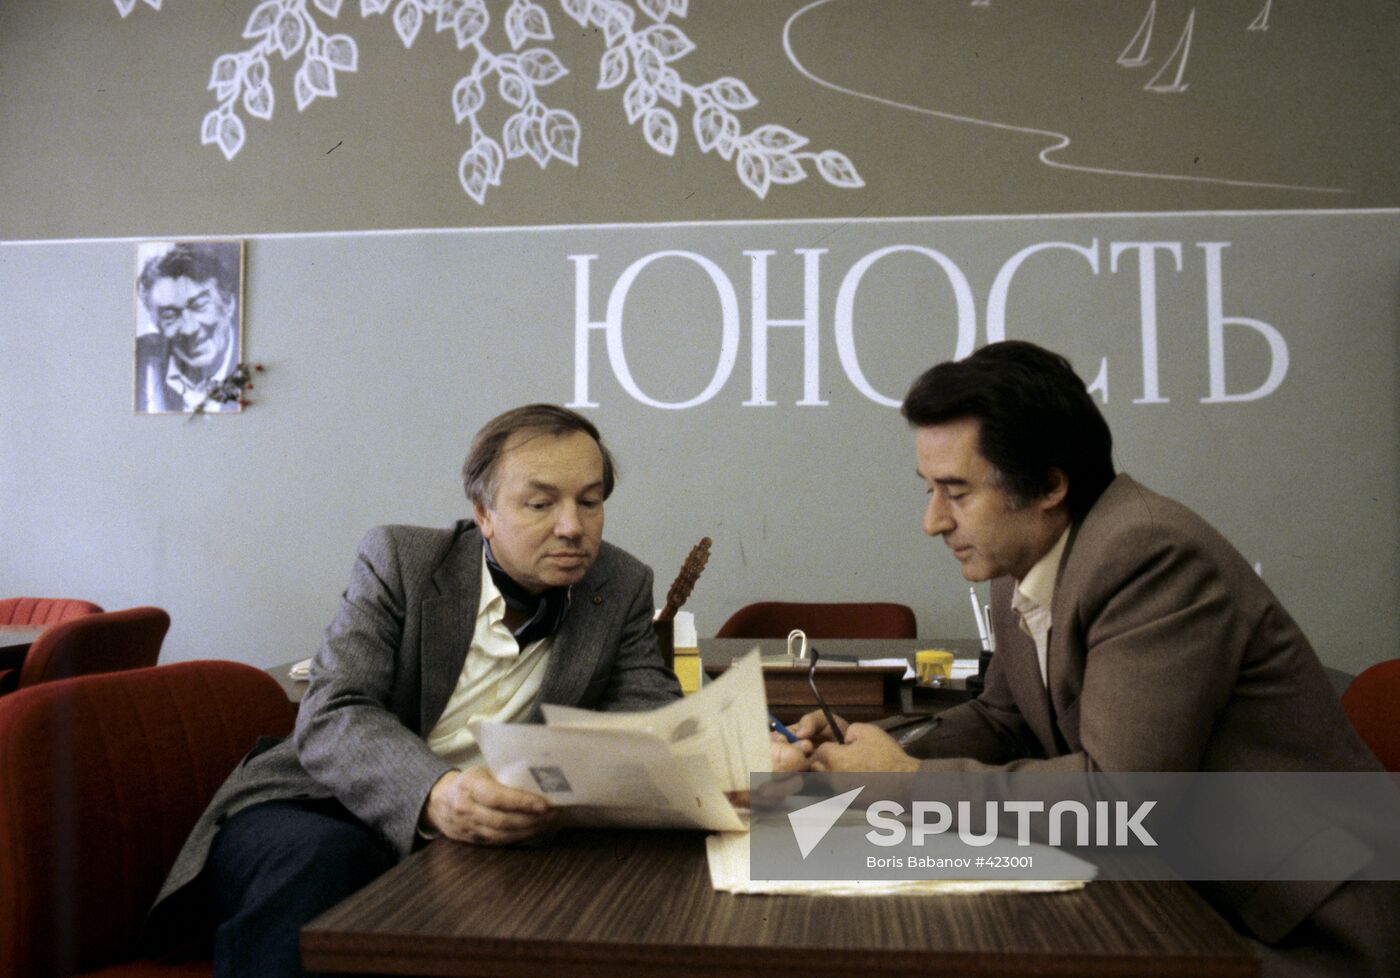 Andrei Dementyev with Andrei Voznesensky